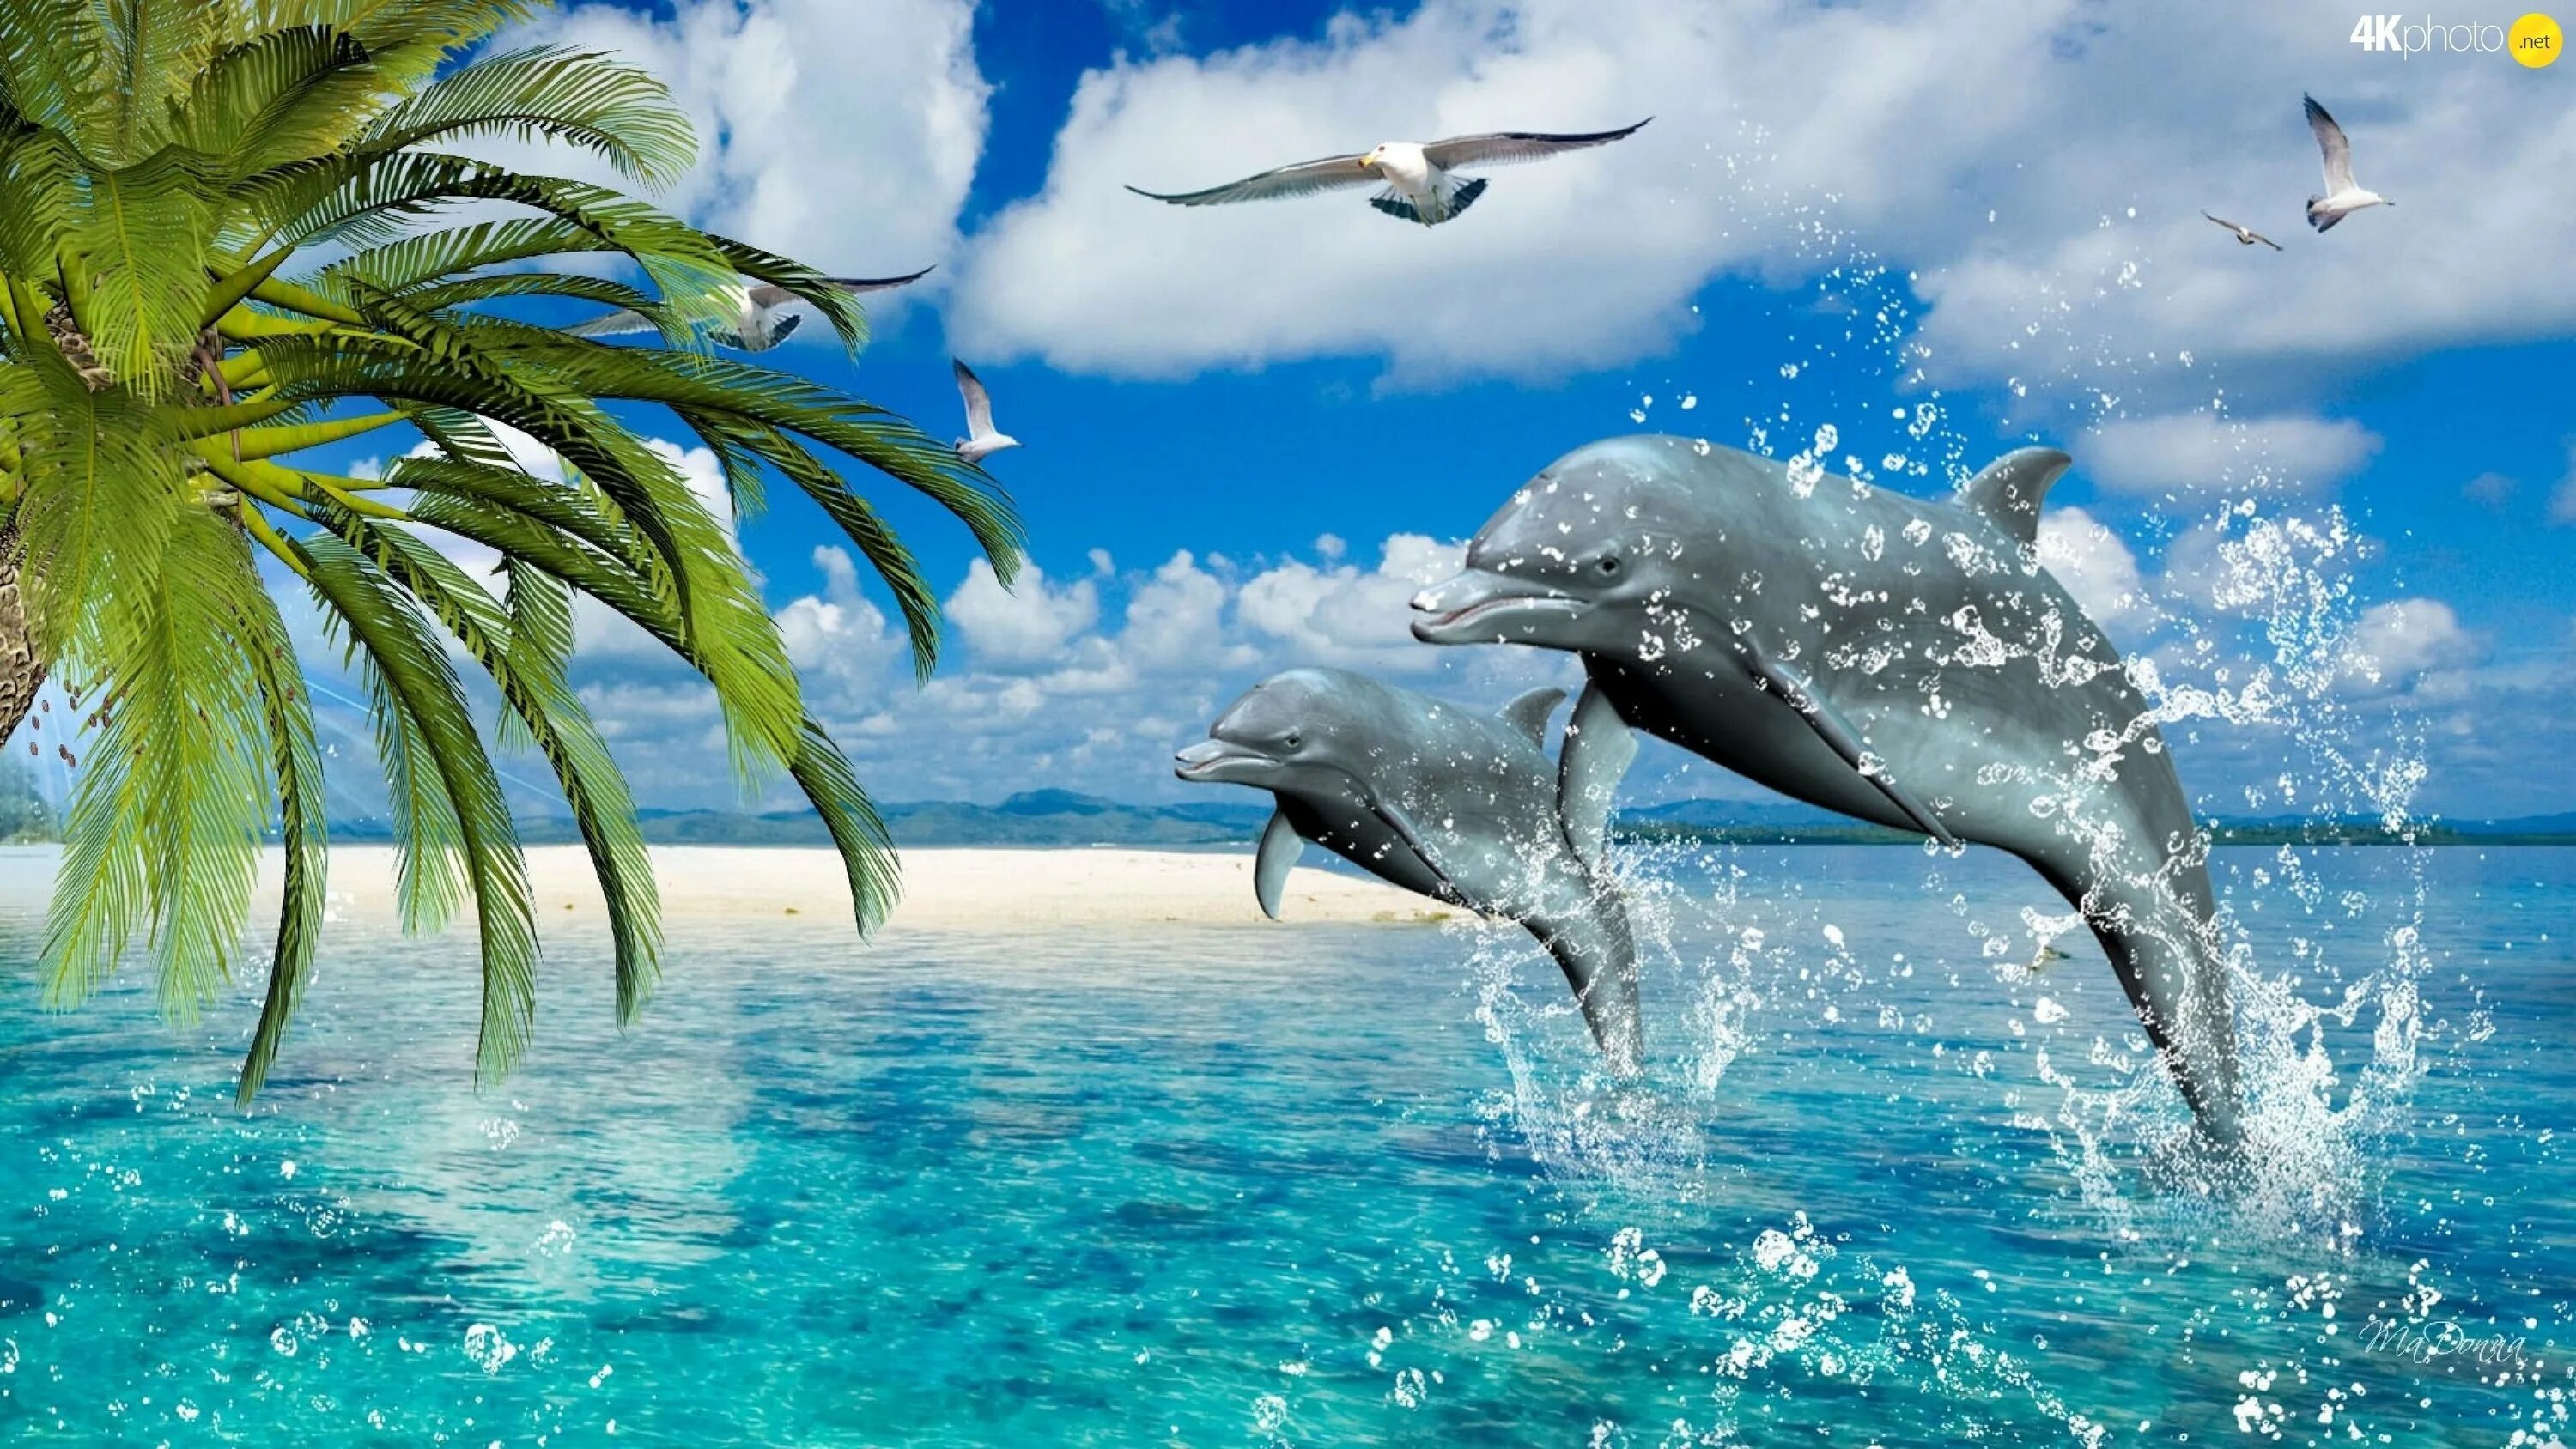 Загрузить живые обои. Дельфины в море. Фотообои дельфины. Море пальмы дельфины. Дельфин в море.